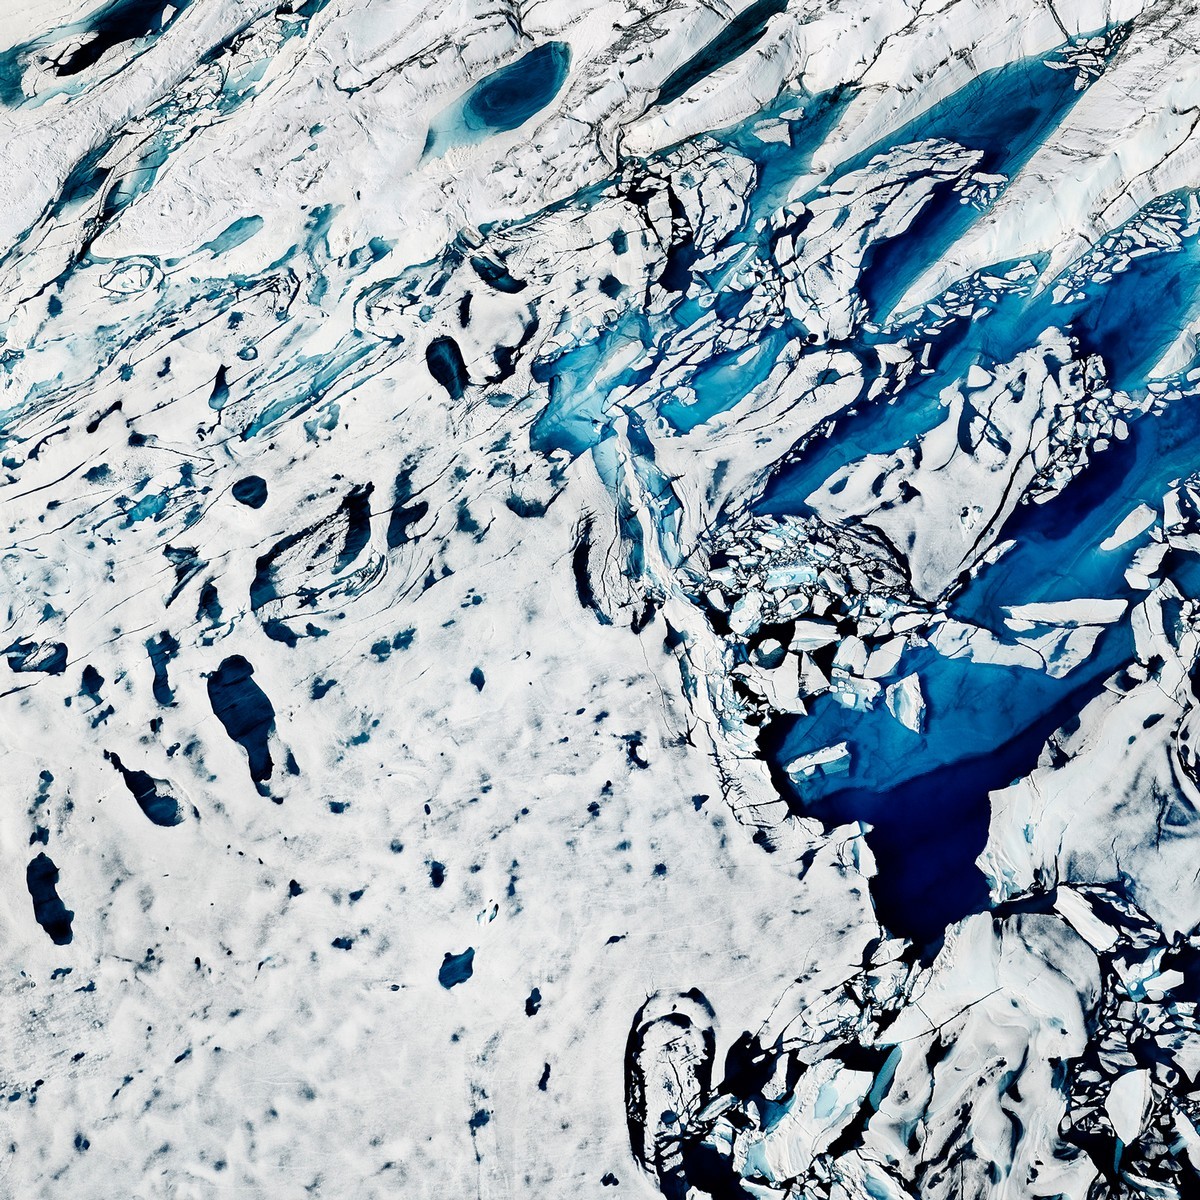 Оттепель: хрупкая красота тающих арктических льдов красота, лед